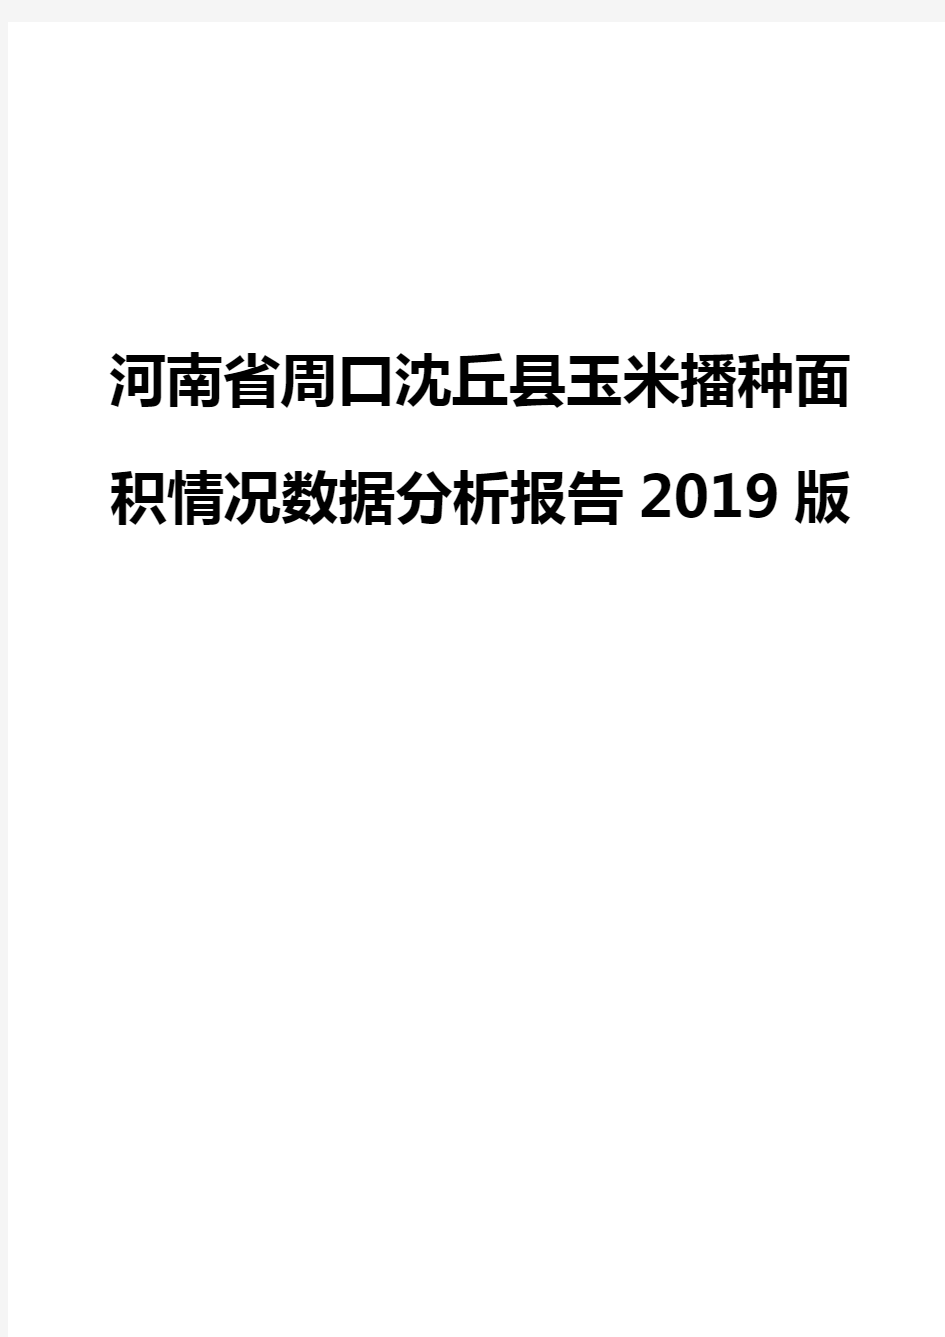 河南省周口沈丘县玉米播种面积情况数据分析报告2019版